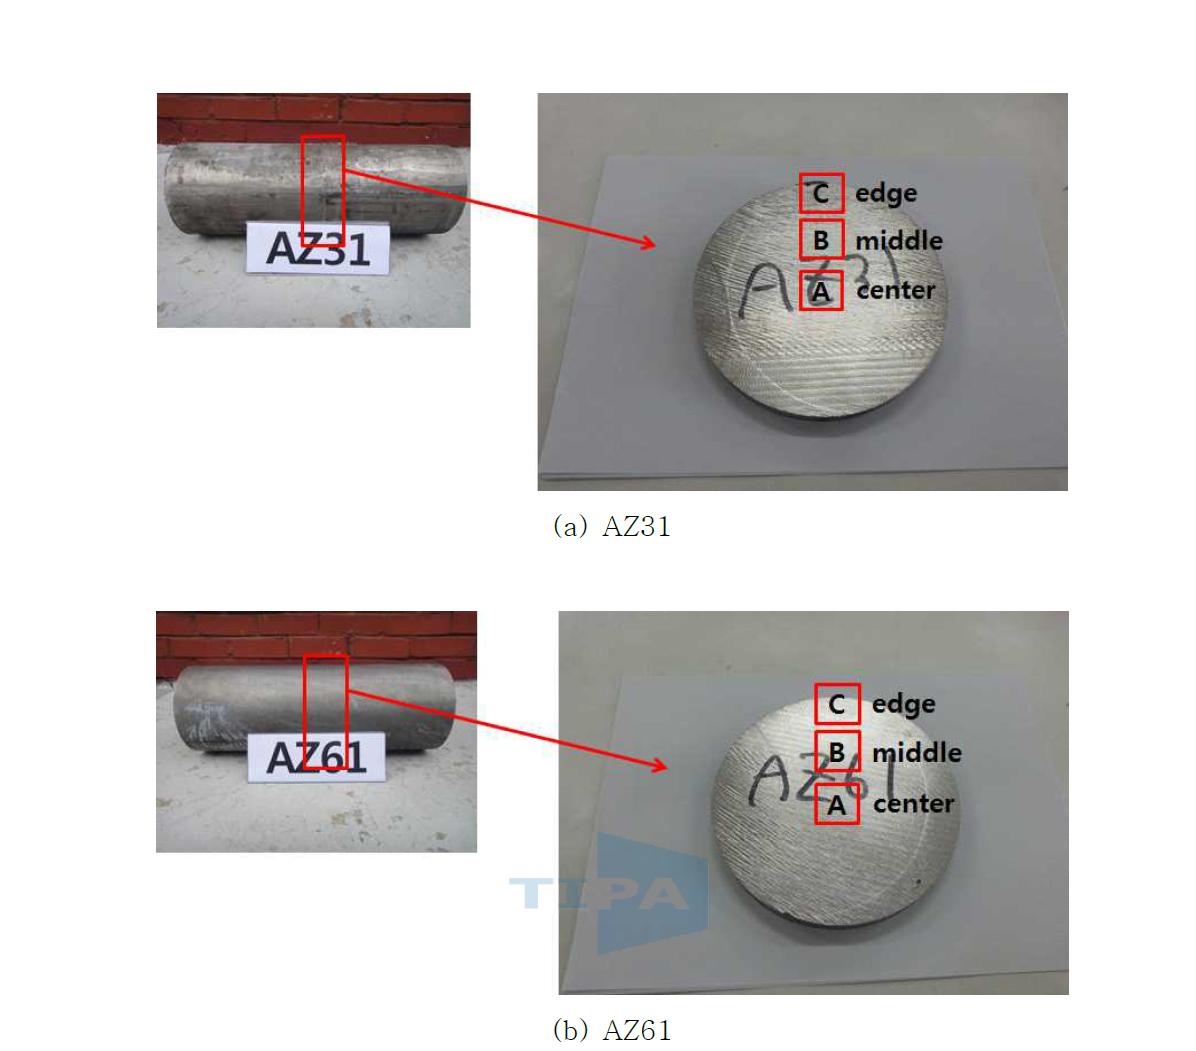 알루텍 제조 AZ31 및 AZ61 연속주조 빌렛의 미세조직 관찰을 위한 시료 채취 위치